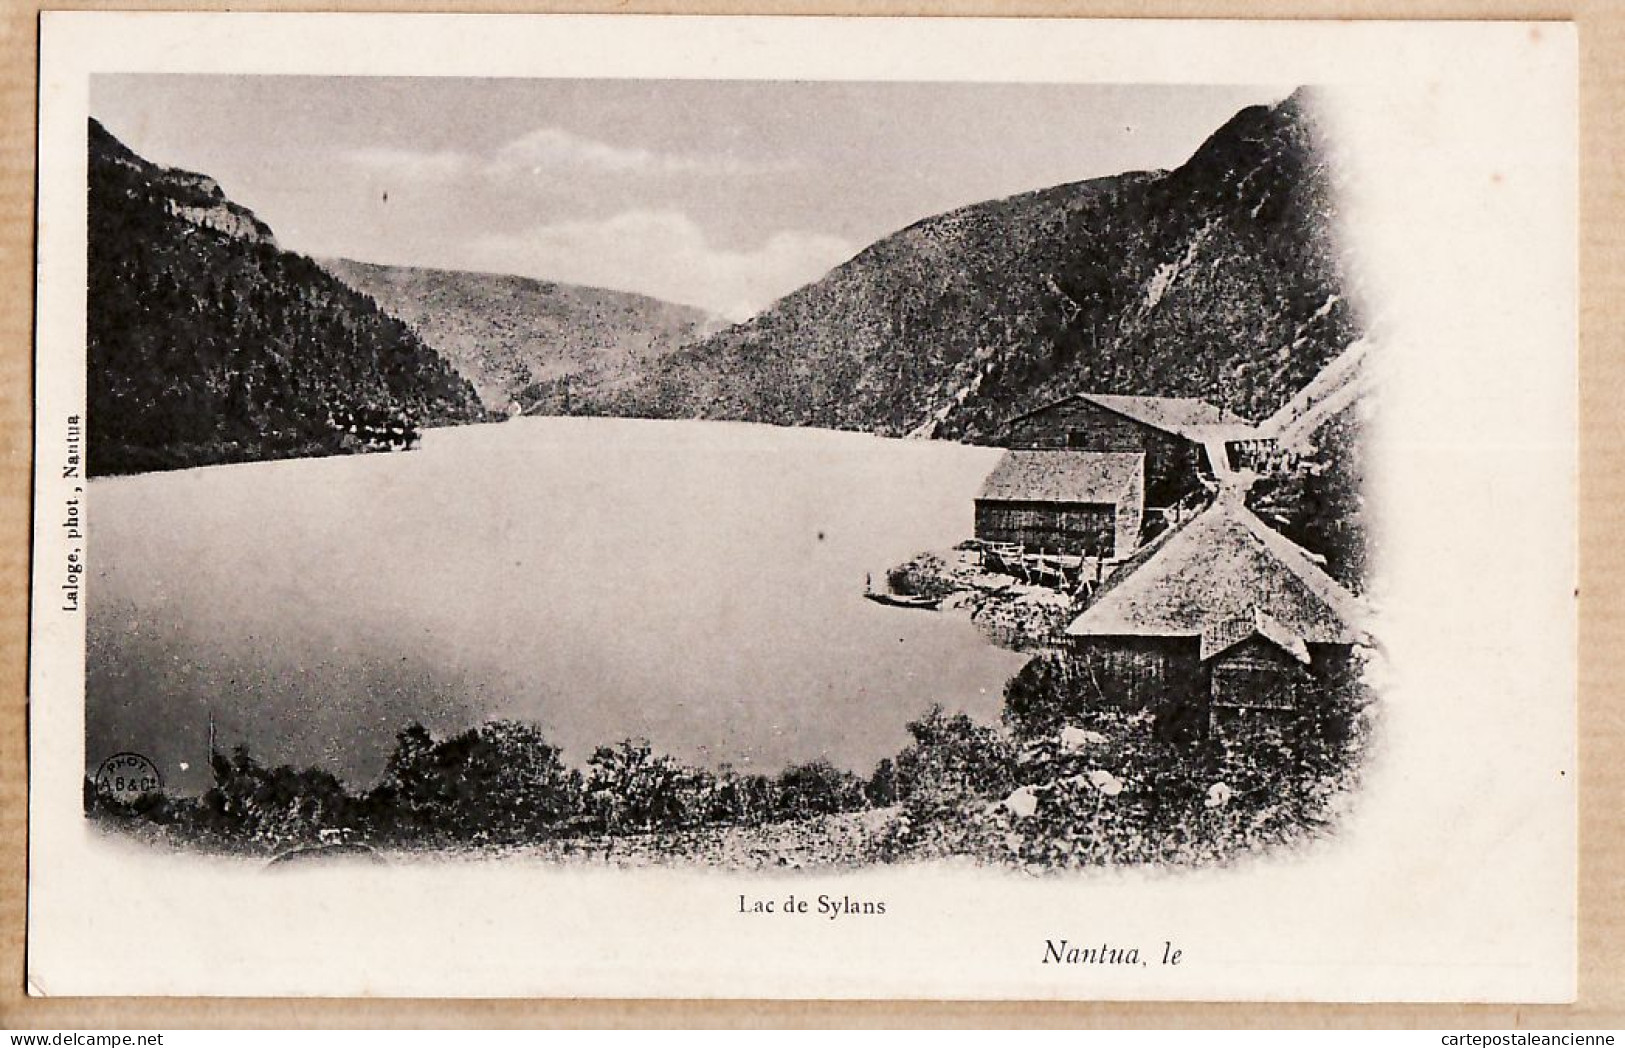 07648 ● Photo-Editeur LALOGE 1890s - Environs De NANTUA Ain Lac De SYLANS Bêtiment Ancienne Glacière - Nantua